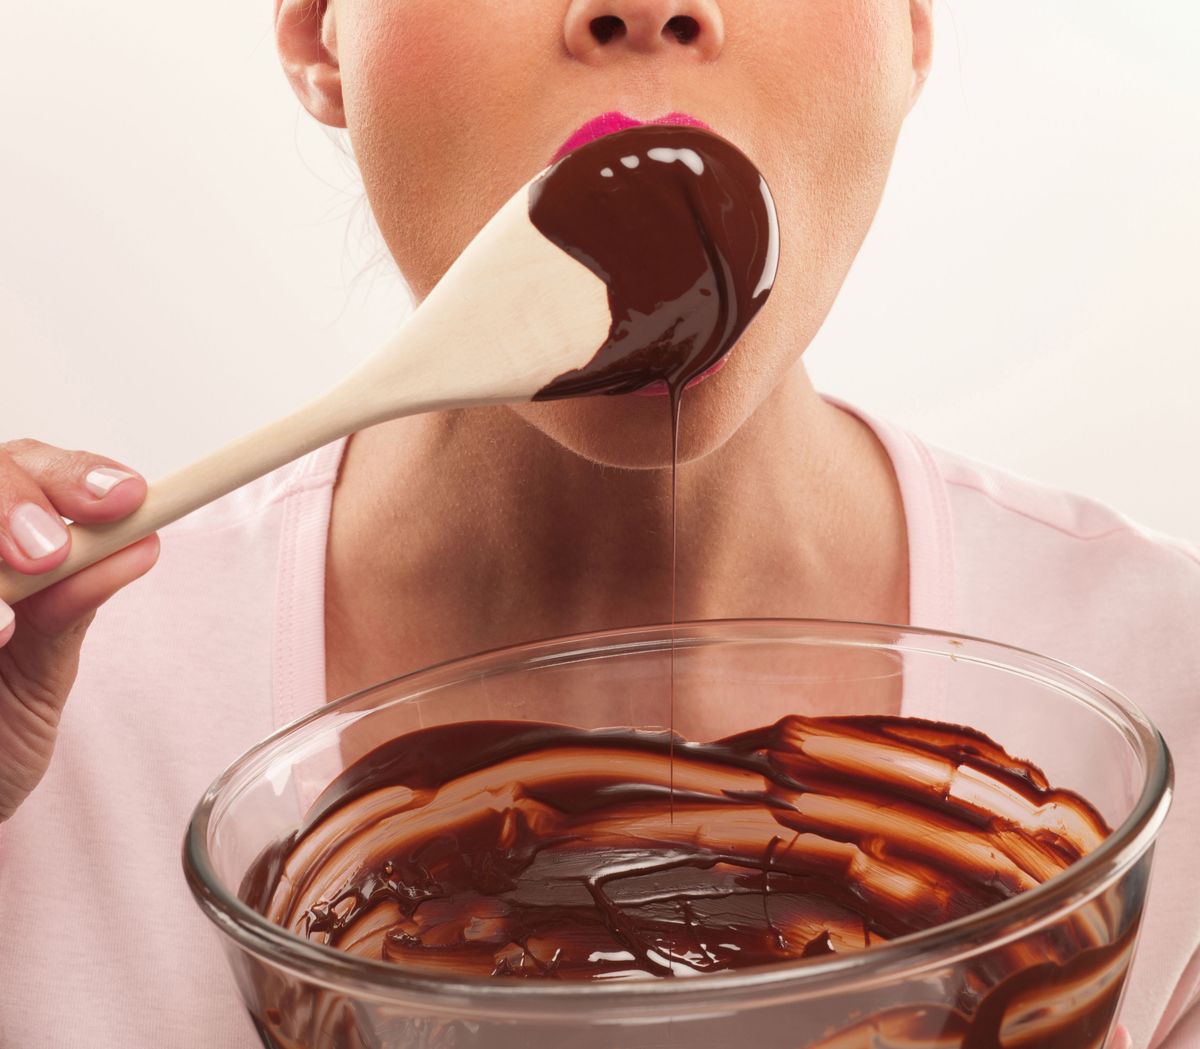 Шоколадки кушаем. Женщина в шоколаде. Ест шоколад. Девушка в шоколадной пасте. Пристрастие к сладкому.